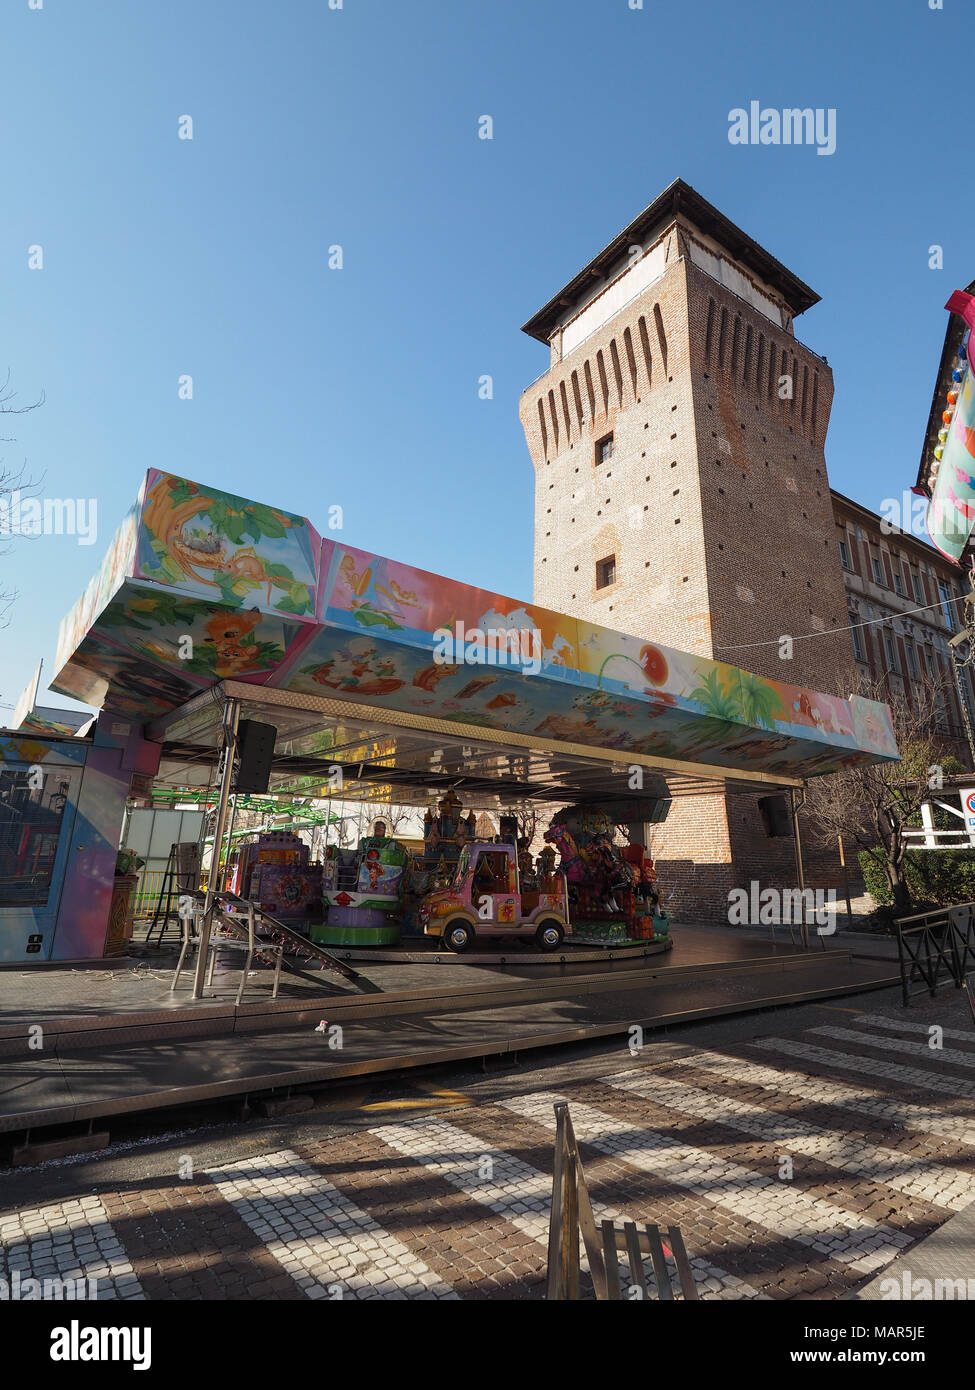 SETTIMO TORINESE, ITALIE - circa 2018 Février : transstockeurs au parc d'attractions Luna Park (appelé en italien) Banque D'Images